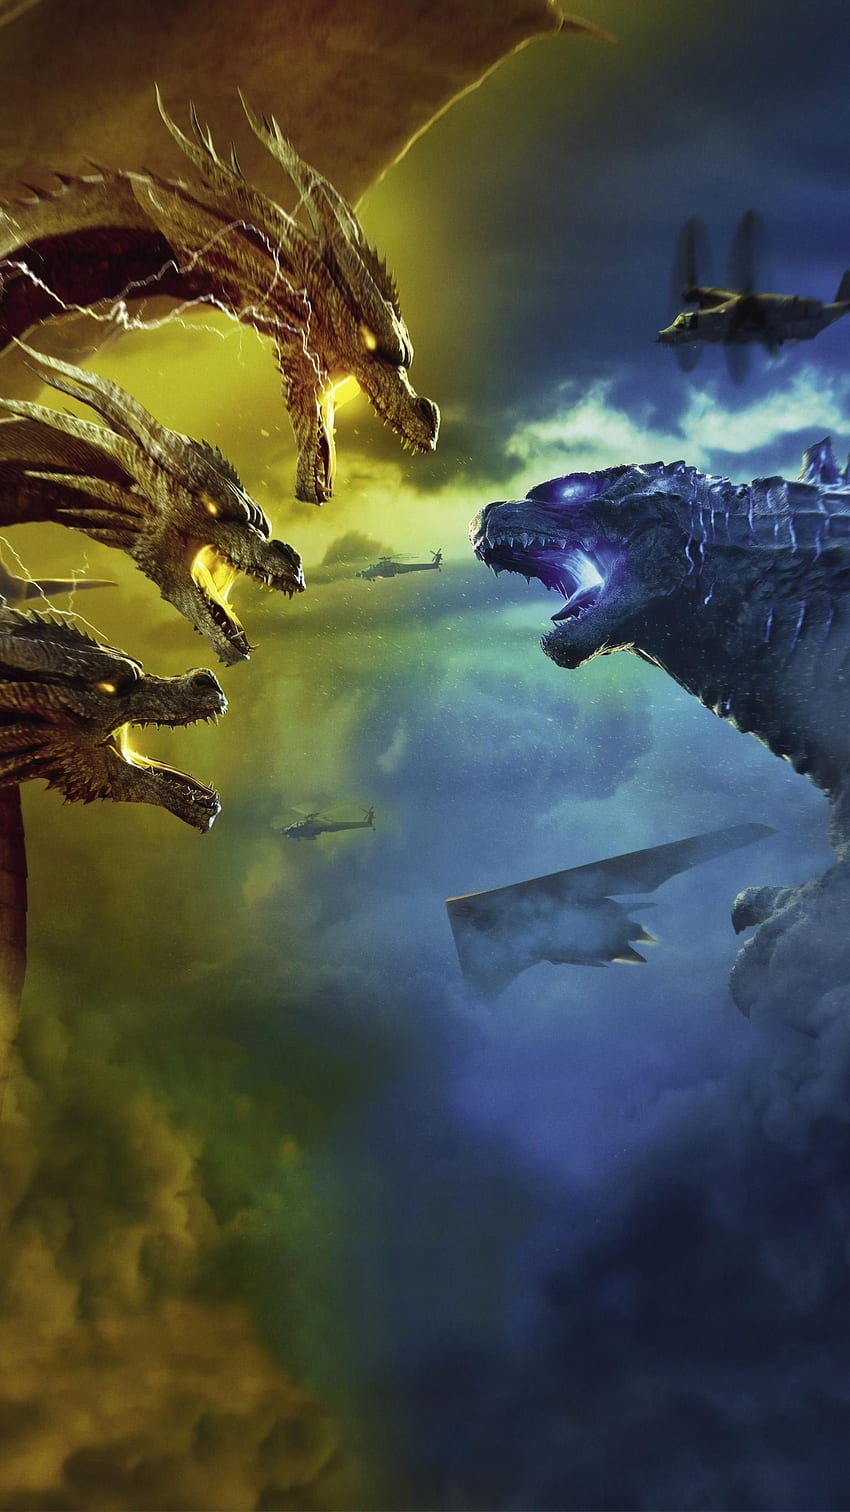 Godzilla: Rey de los monstruos (2019) Teléfono. Cinemanía. Godzilla, Godzilla vs king ghidorah, Monstruos de películas fondo de pantalla del teléfono